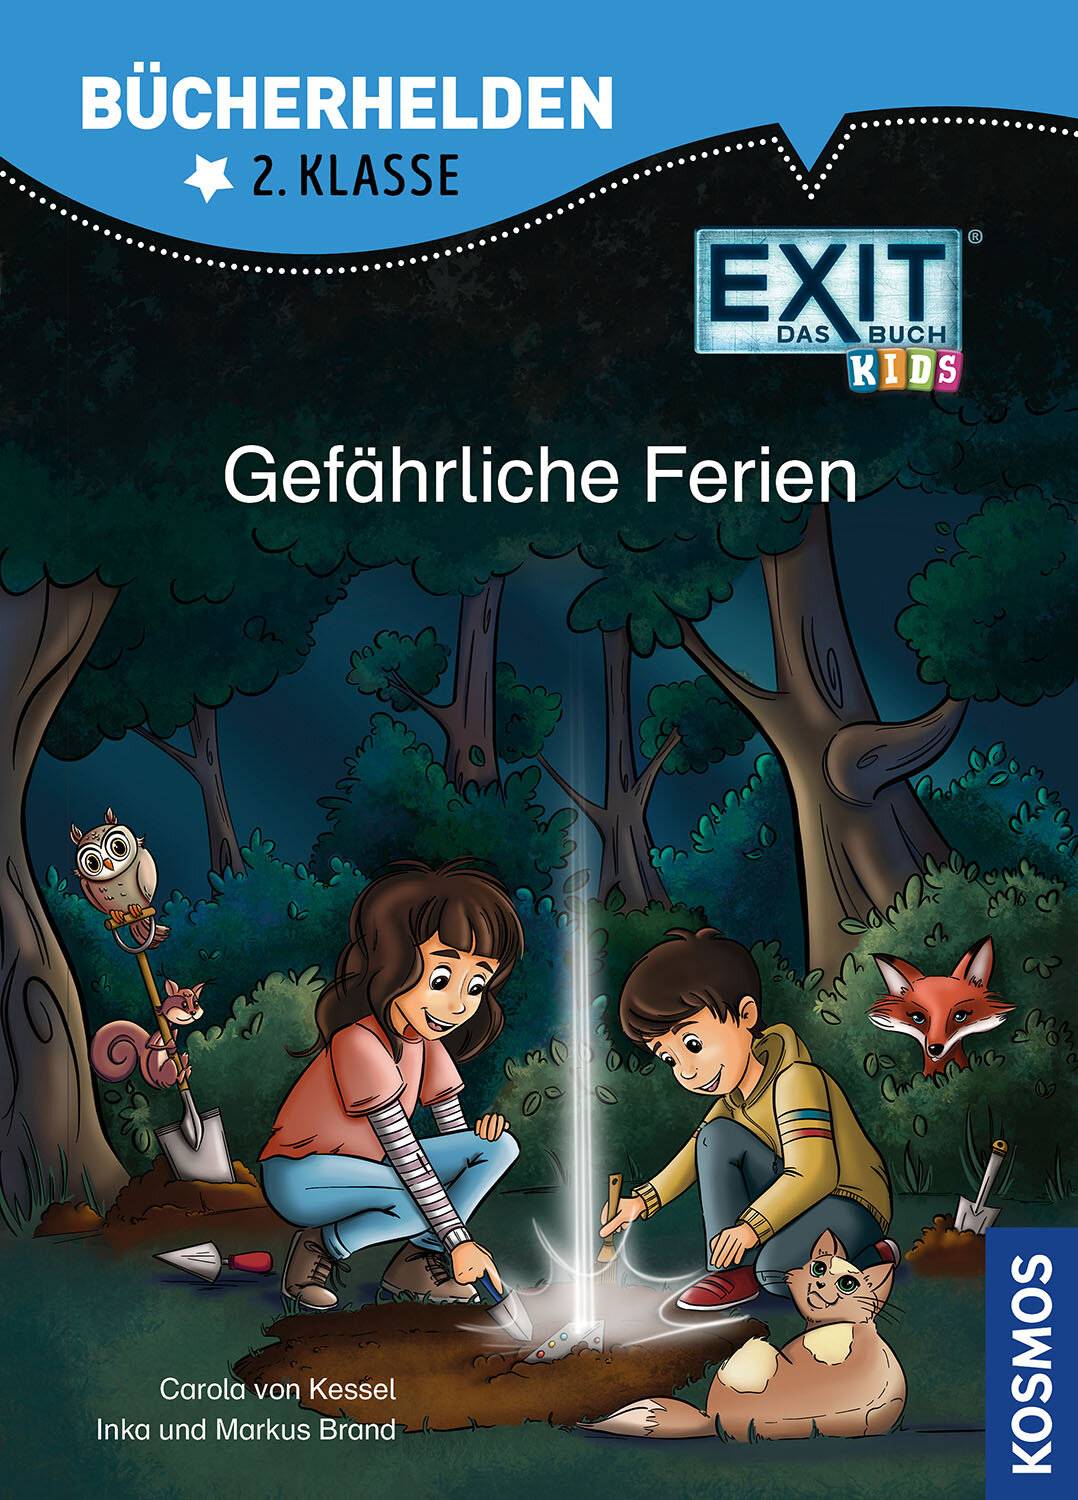 Gefährliche Ferien EXIT Kids Bücherhelden 2. Klasse bietet spannende Geschichten für Erstleser.